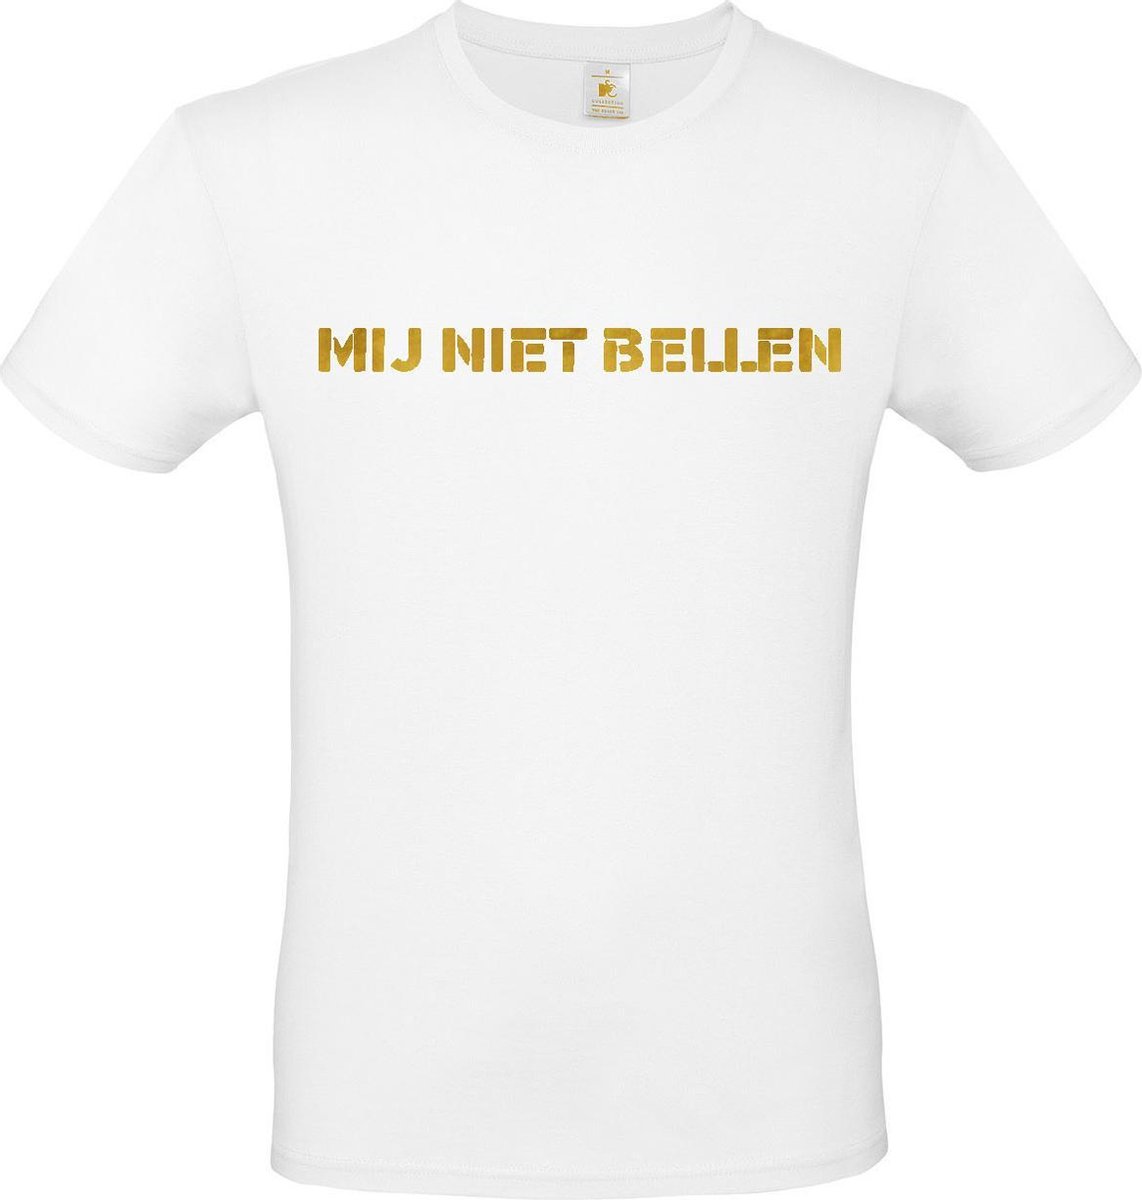 T-shirt met opdruk “Mij niet bellen”, Wit T-shirt met goudkleurige opdruk. | Chateau Meiland | Martien Meiland | BC custom